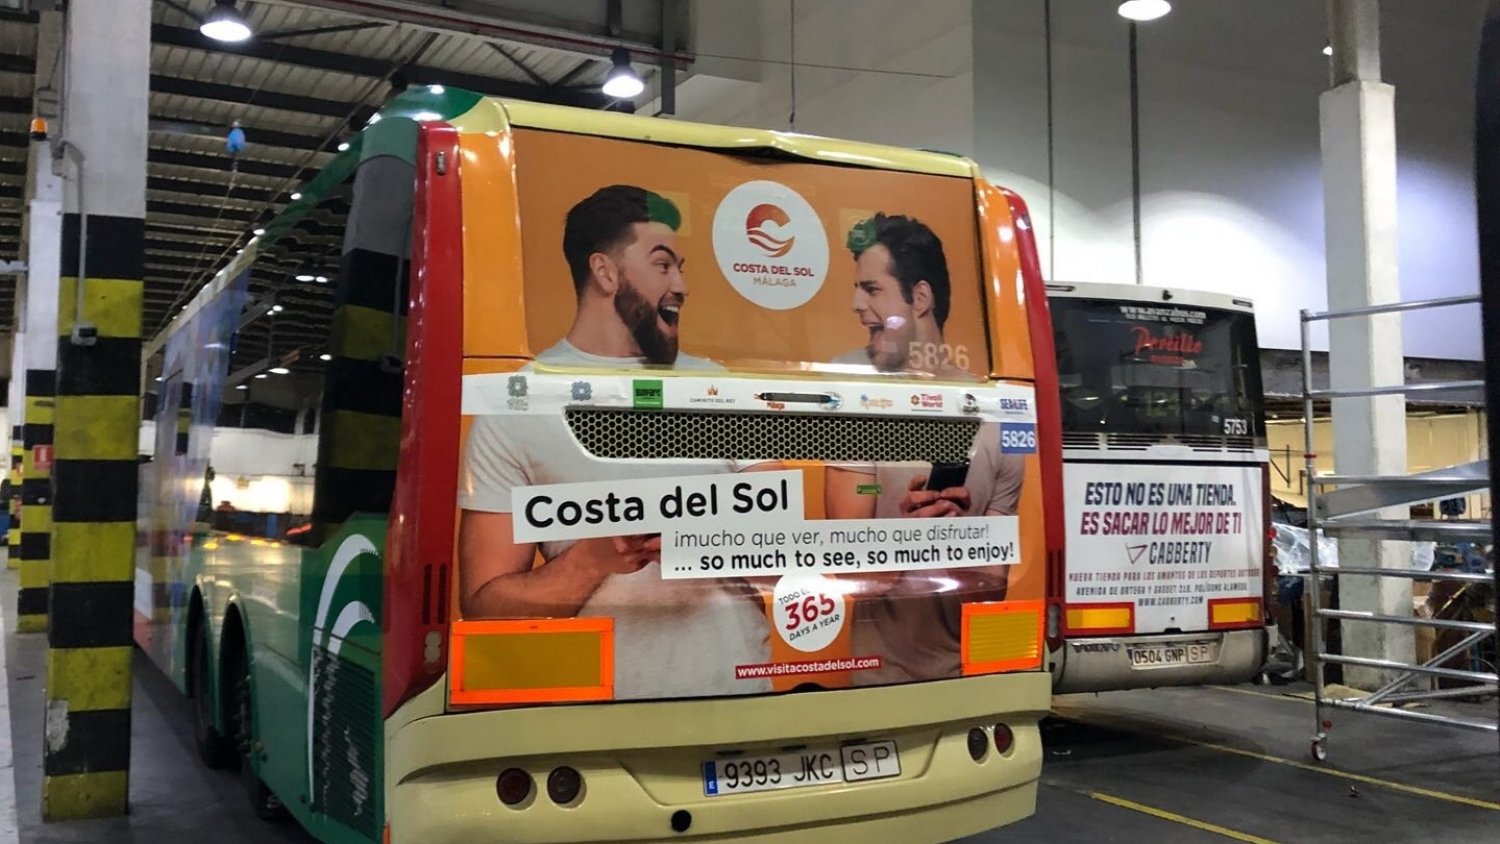 Turismo Costa del Sol amplía su campaña en los autobuses de la provincia, que generará 140 millones de potenciales impactos